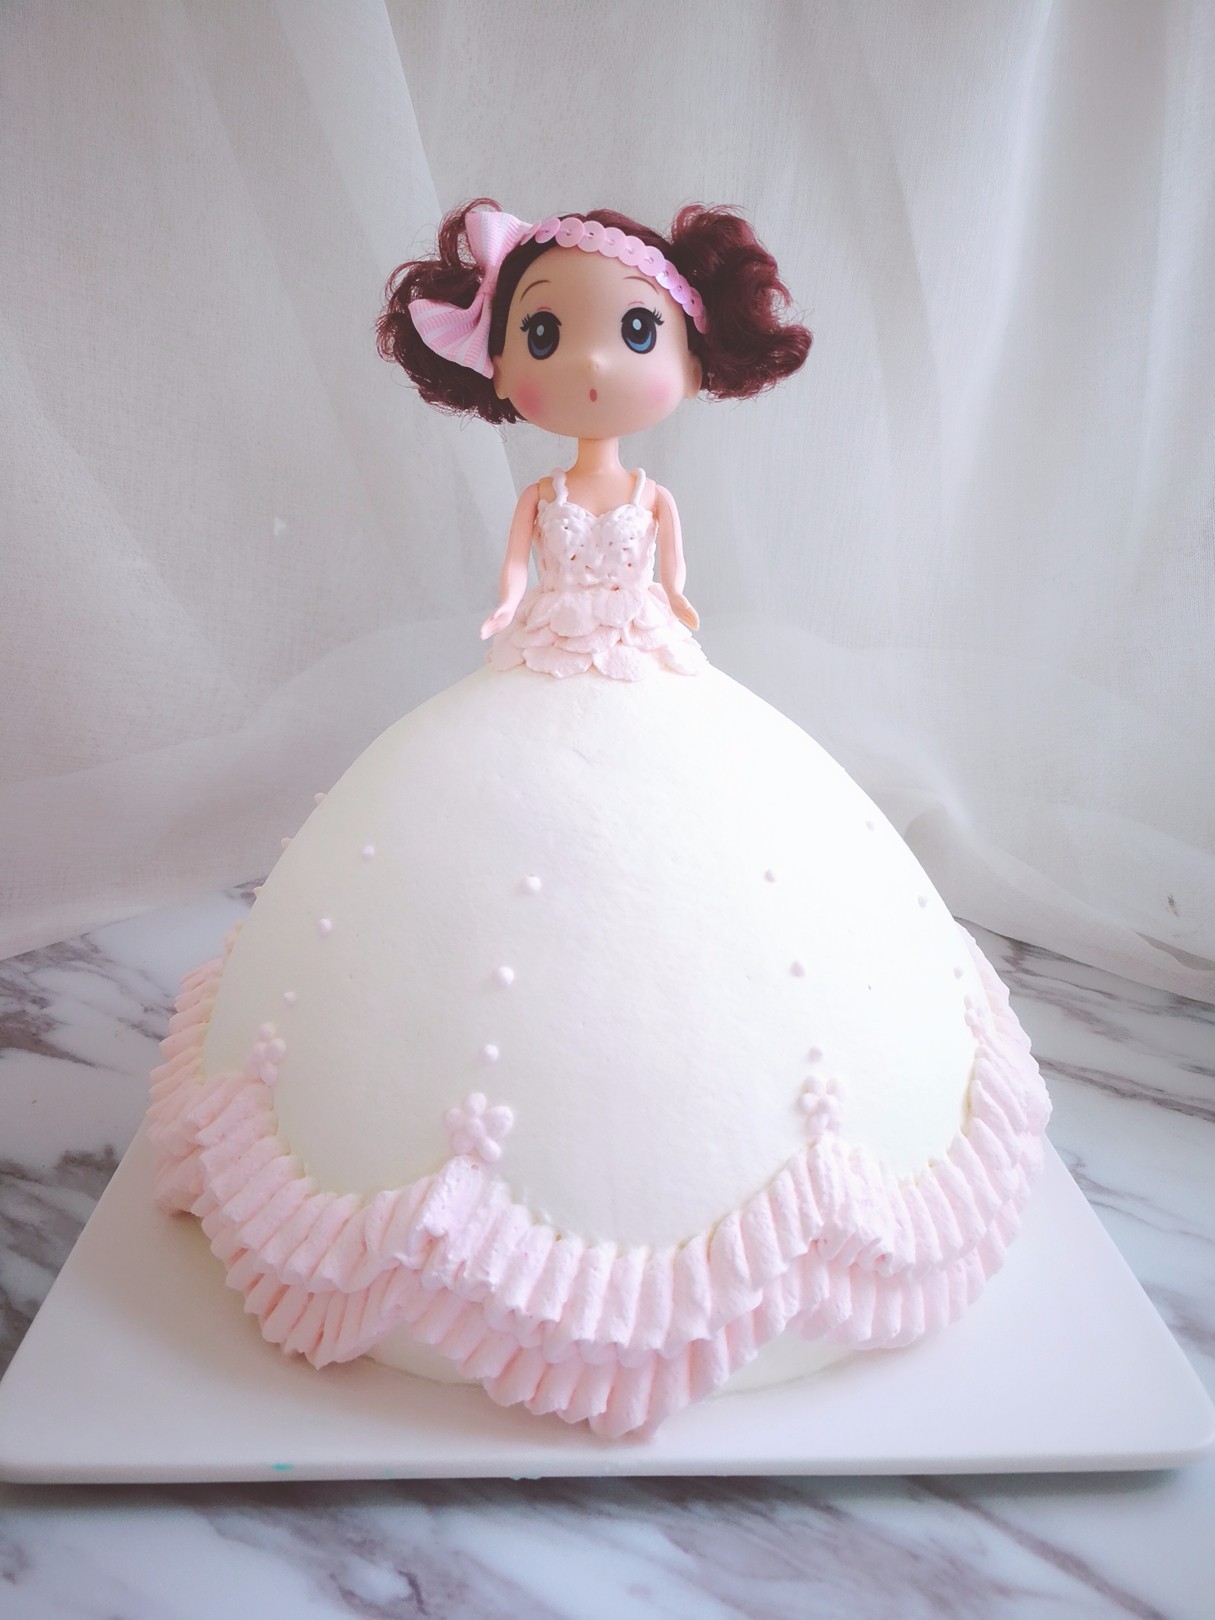 迷糊娃娃蛋糕很流行两款适合接单的淡奶油芭比娃娃蛋糕